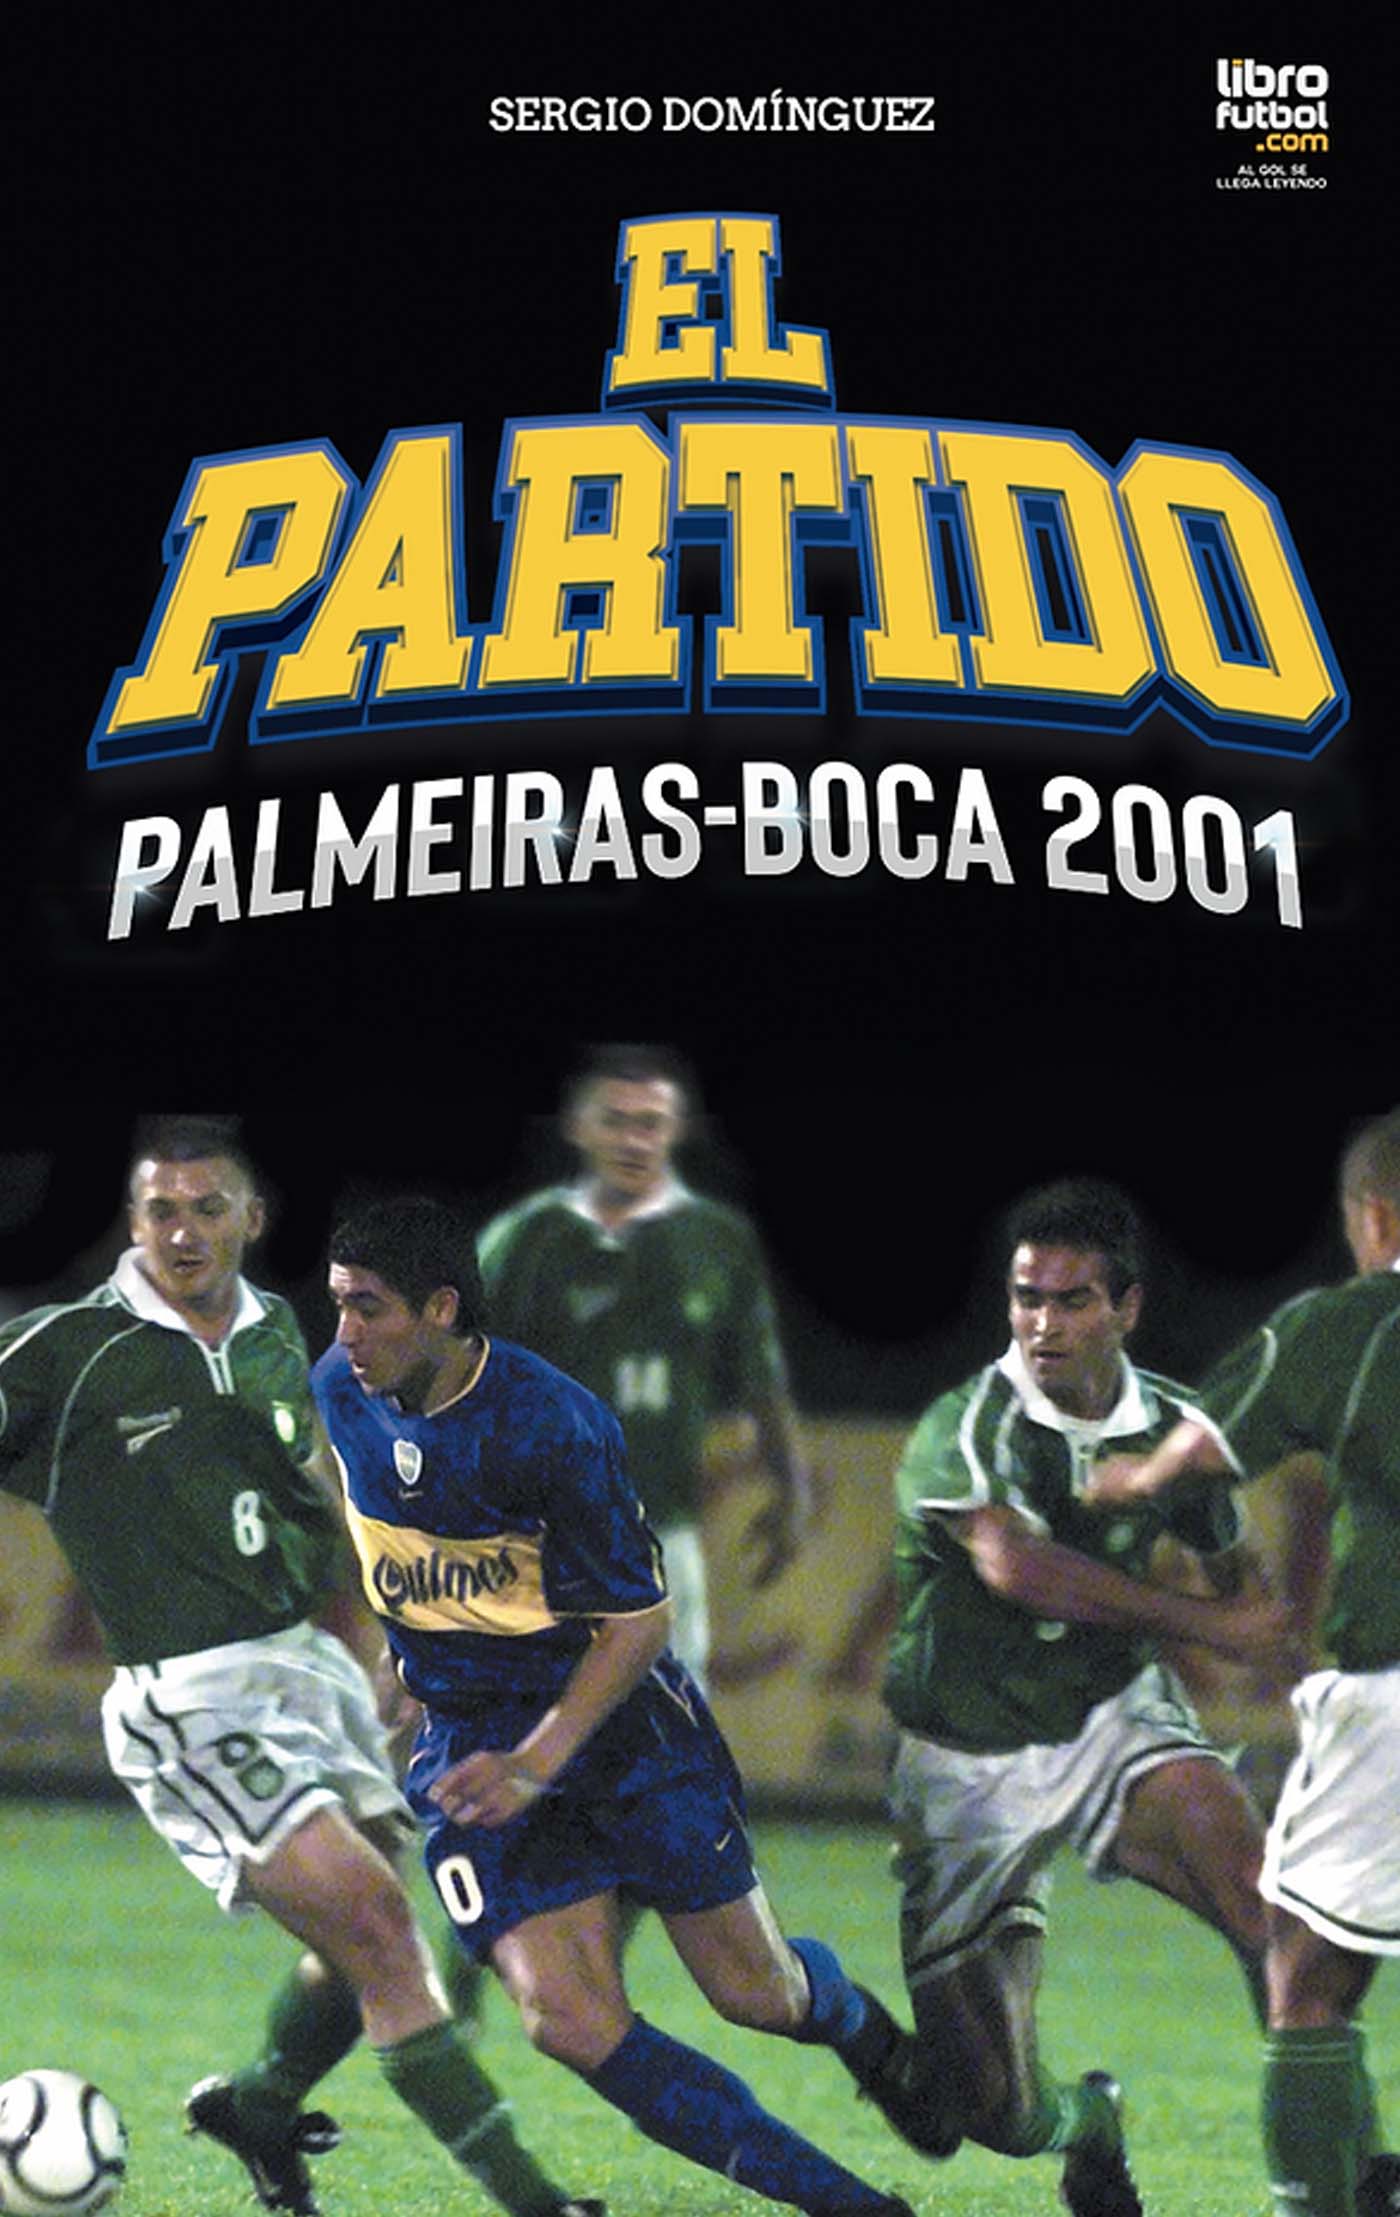 El Partido Palmeiras Boca 2001